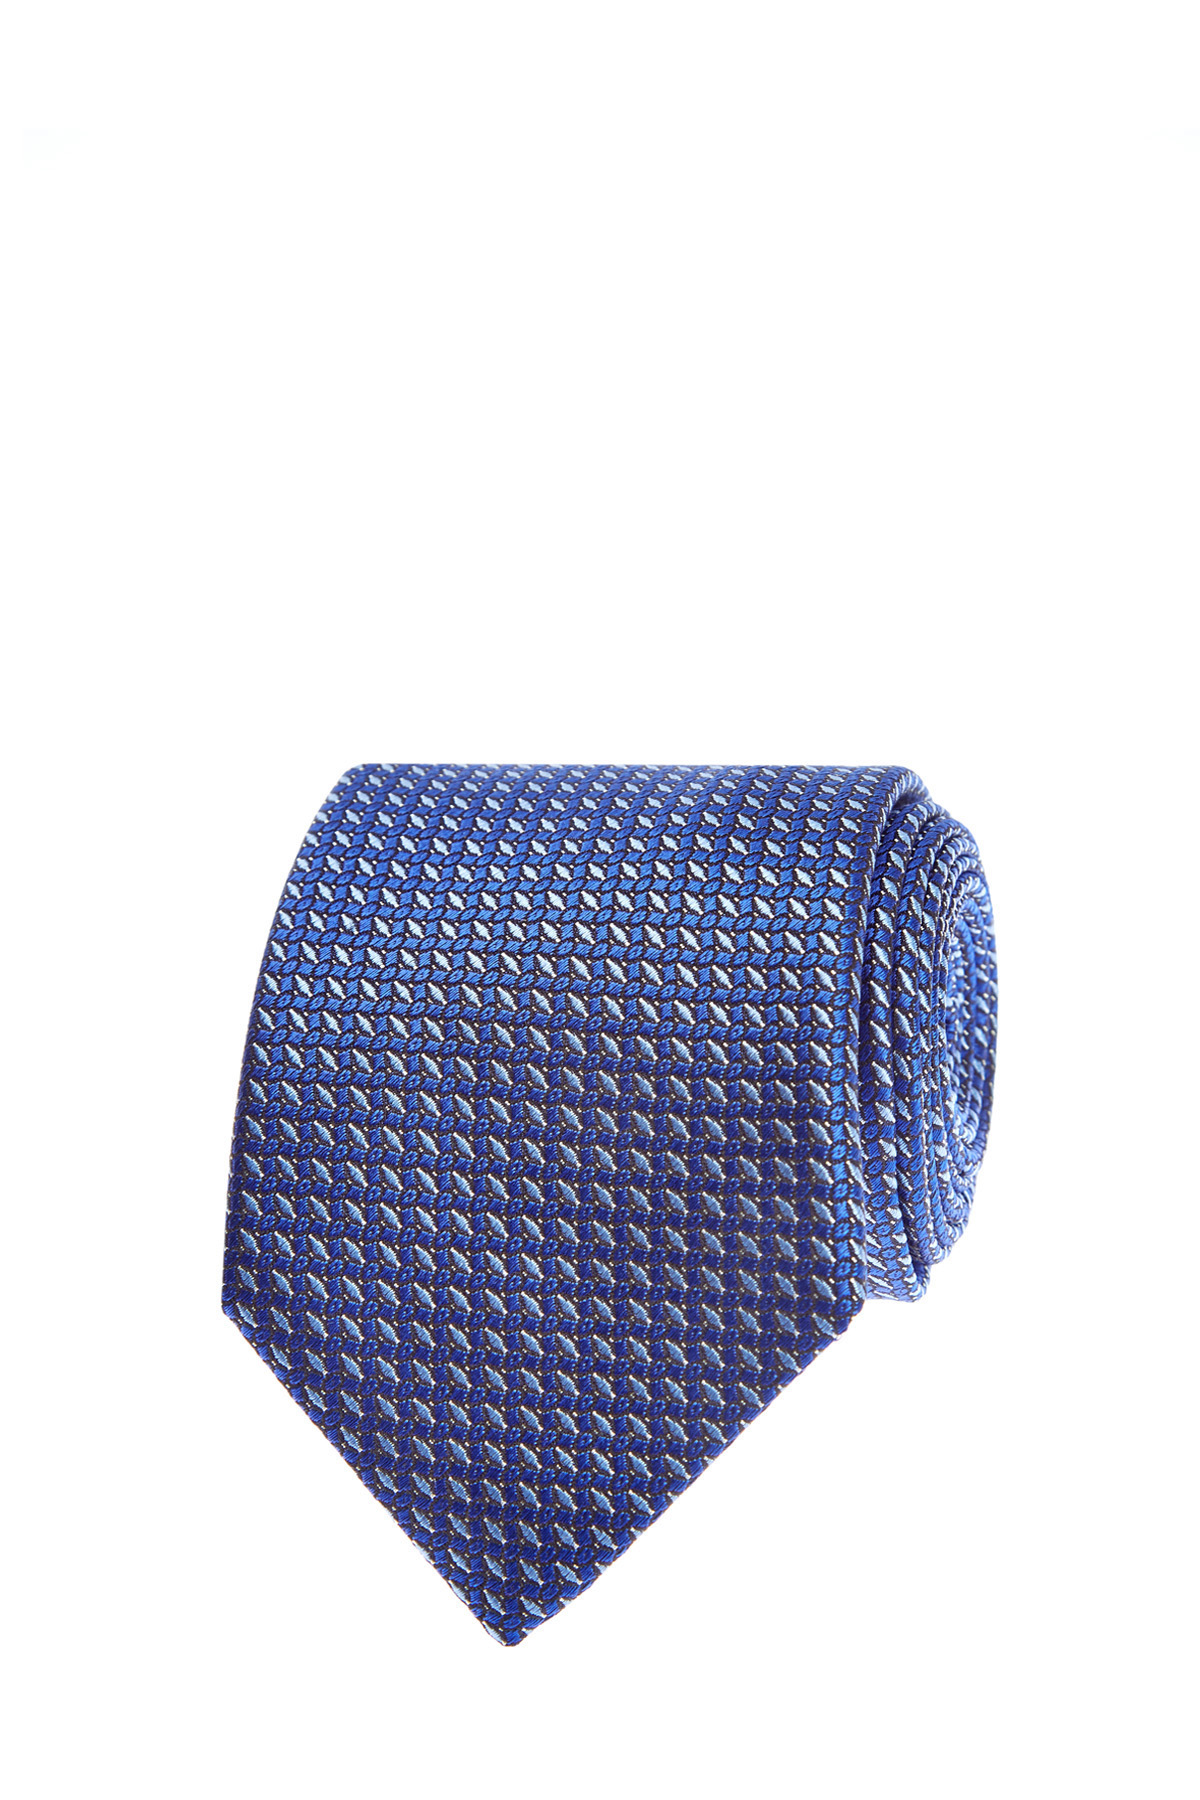 Шелковый галстук с жаккардовым вышитым принтом CANALI, цвет синий, размер 40;41;42;43;44;45 - фото 1